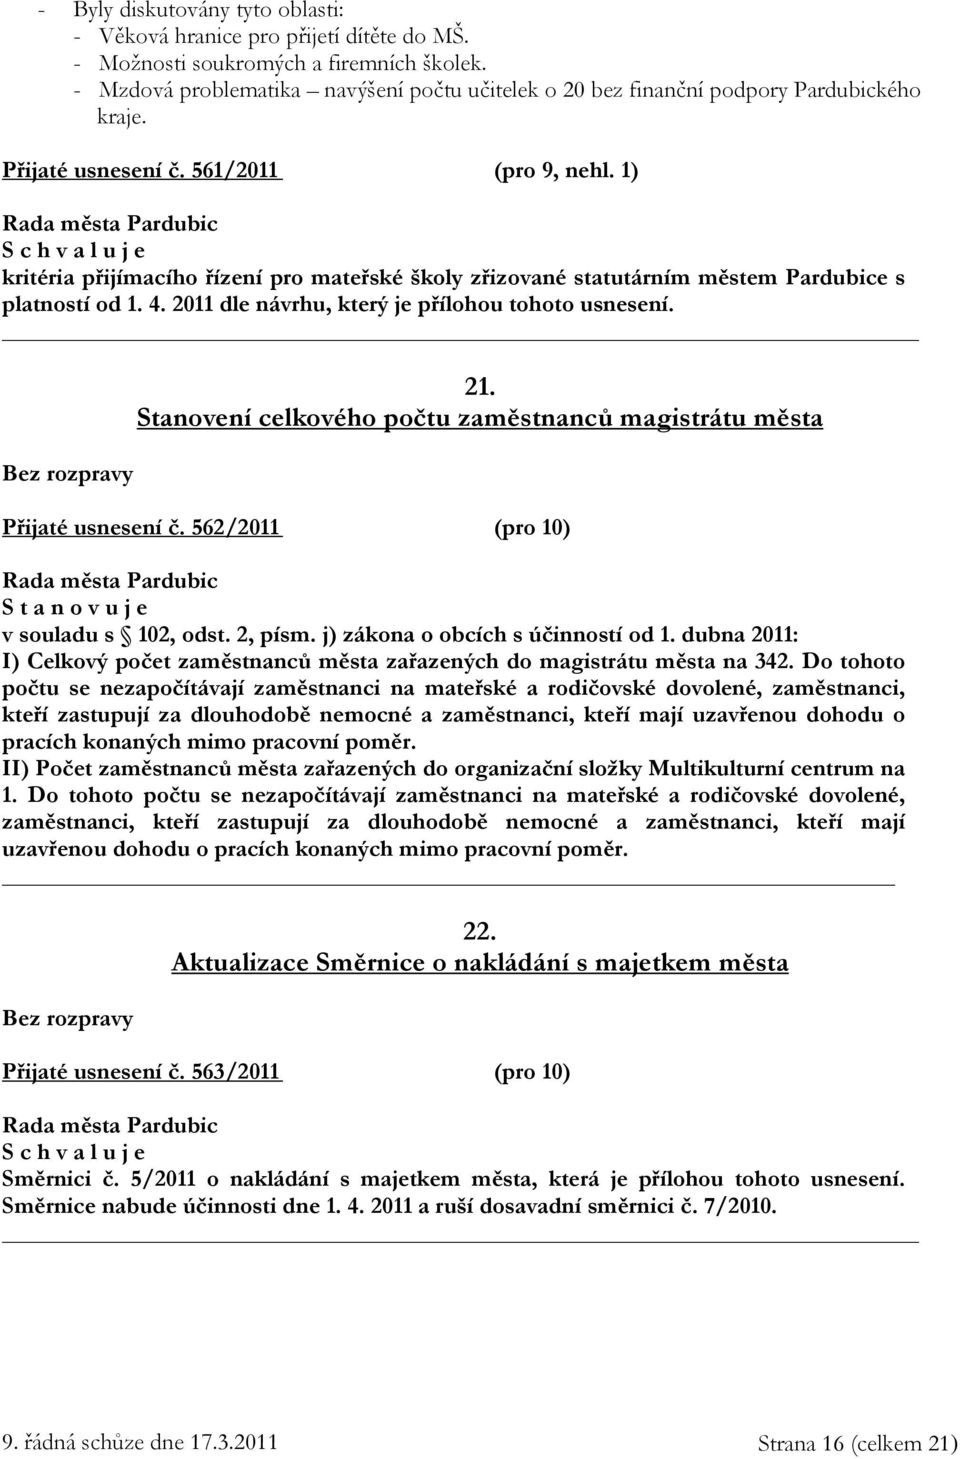 1) kritéria přijímacího řízení pro mateřské školy zřizované statutárním městem Pardubice s platností od 1. 4. 2011 dle návrhu, který je přílohou tohoto usnesení. 21.